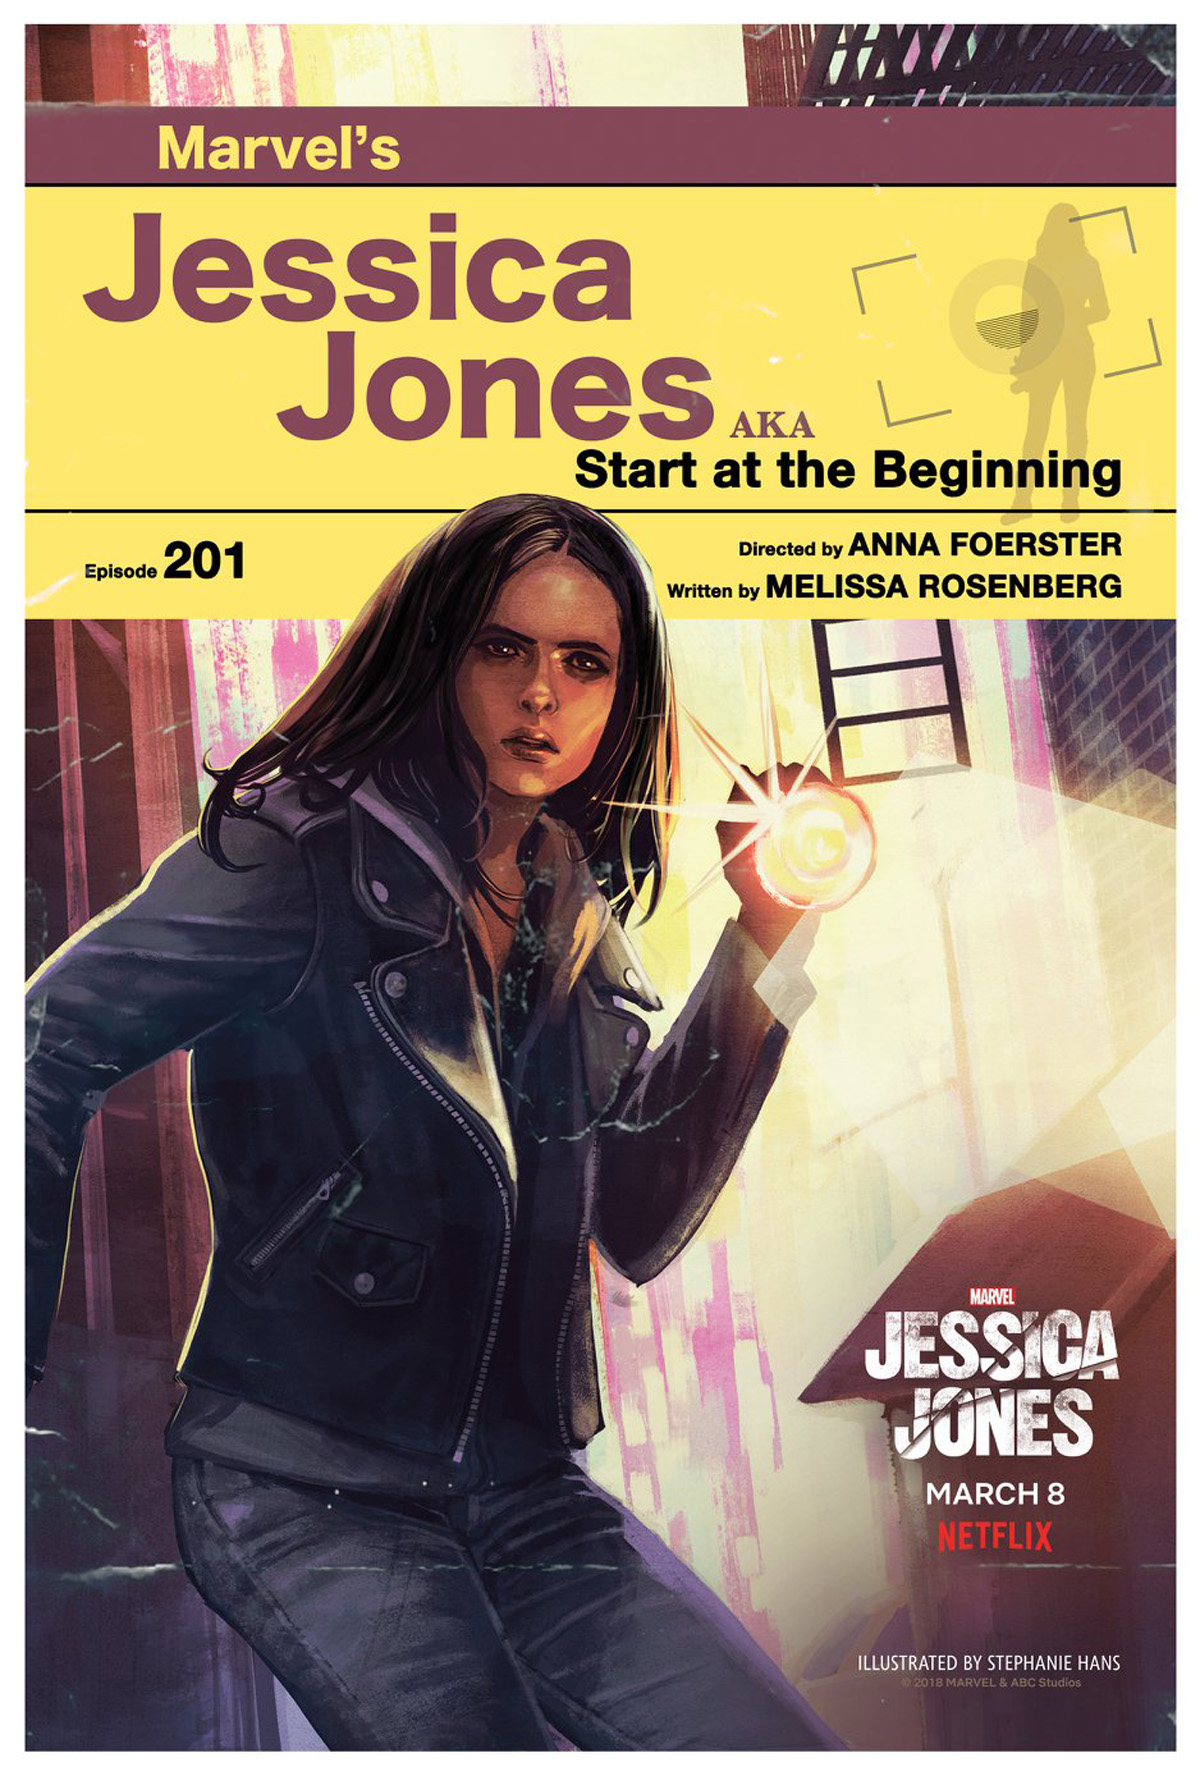 Jessica Jones Season 2